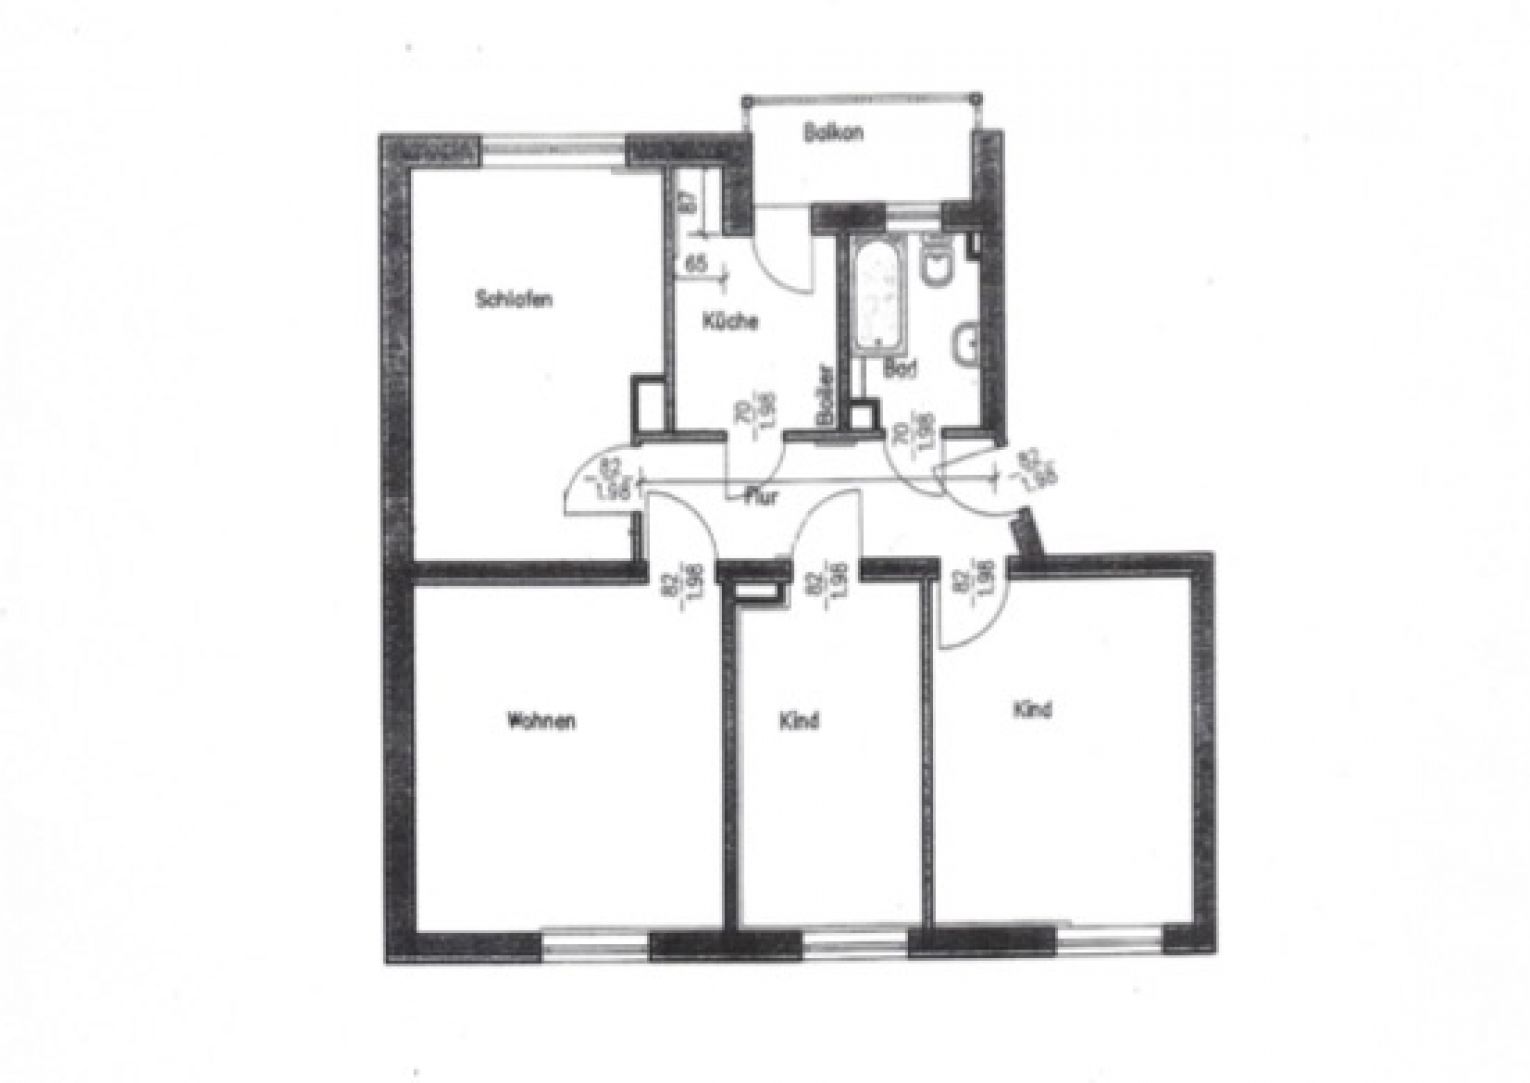 4-Zimmer • 2.Etage • Bad mit Fenster und Wanne • Küche mit Zugang Loggia • Idyllisches Grundstück